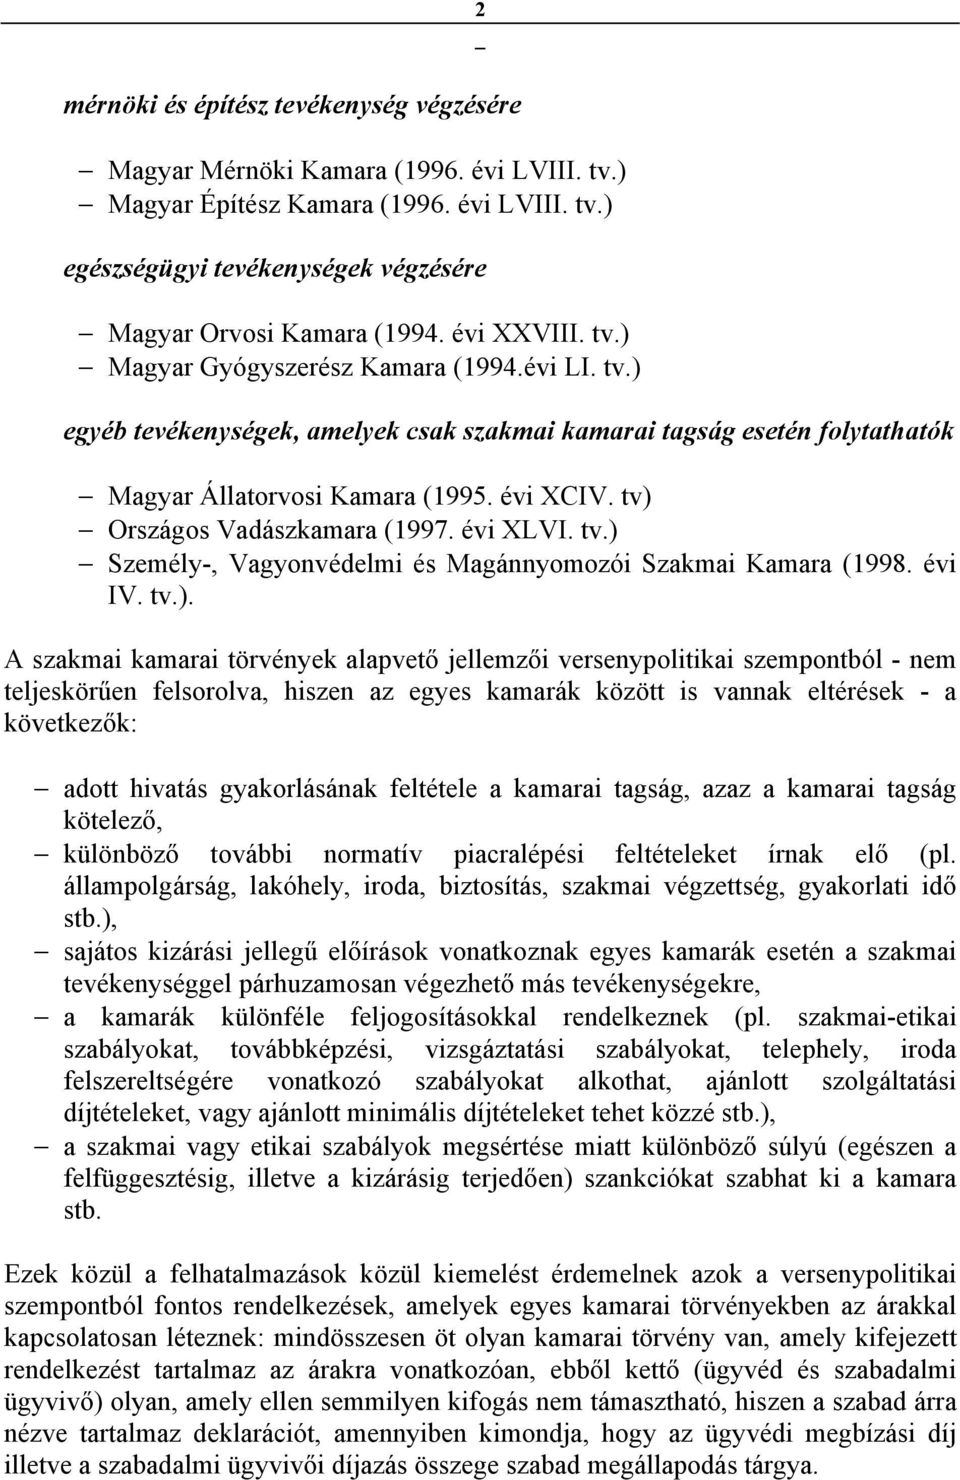 tv) Országos Vadászkamara (1997. évi XLVI. tv.) Személy-, Vagyonvédelmi és Magánnyomozói Szakmai Kamara (1998. évi IV. tv.). A szakmai kamarai törvények alapvető jellemzői versenypolitikai